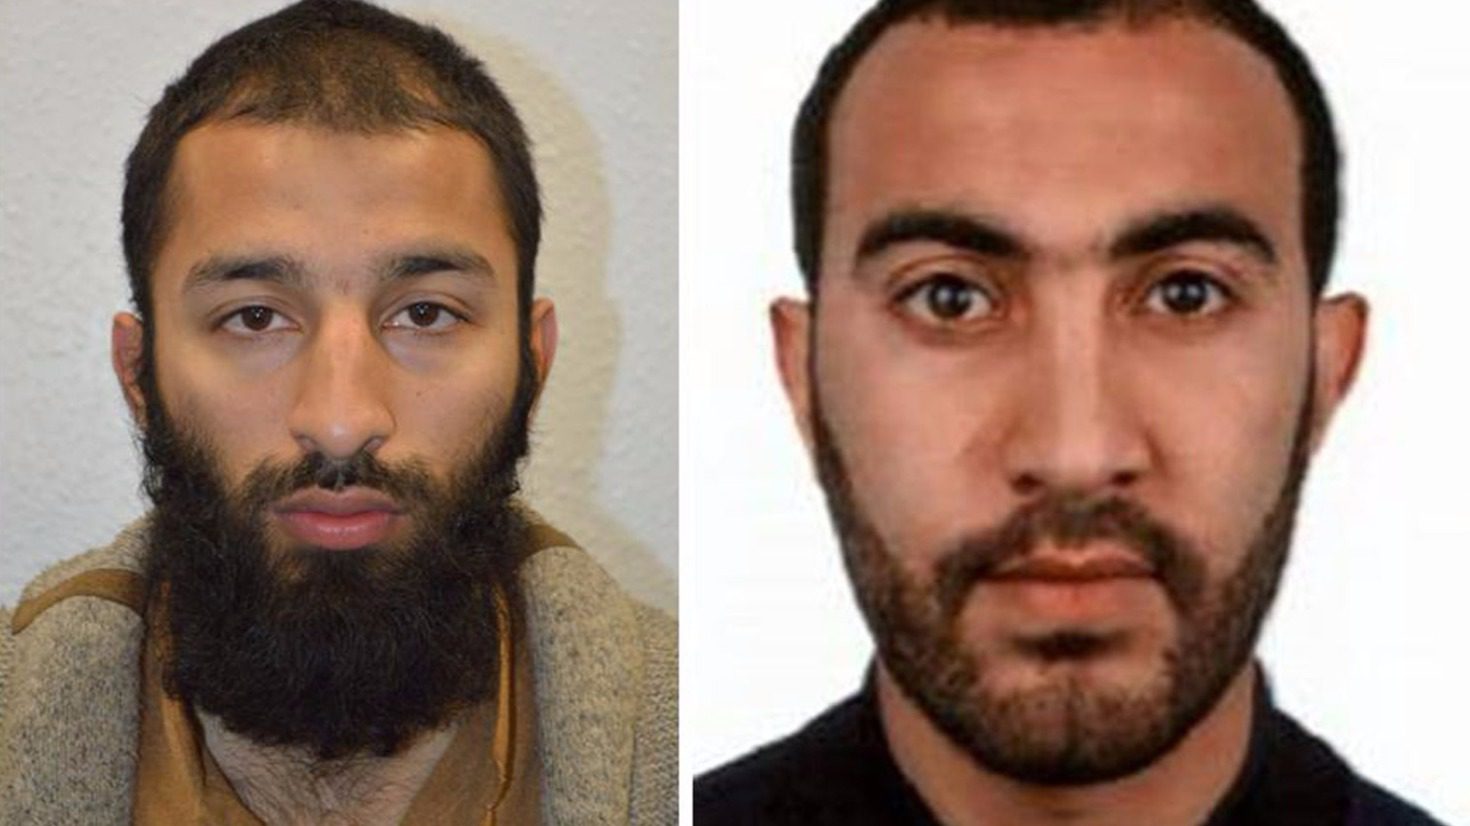 Londoni terrortámadás: megnevezett két elkövetőt a rendőrség